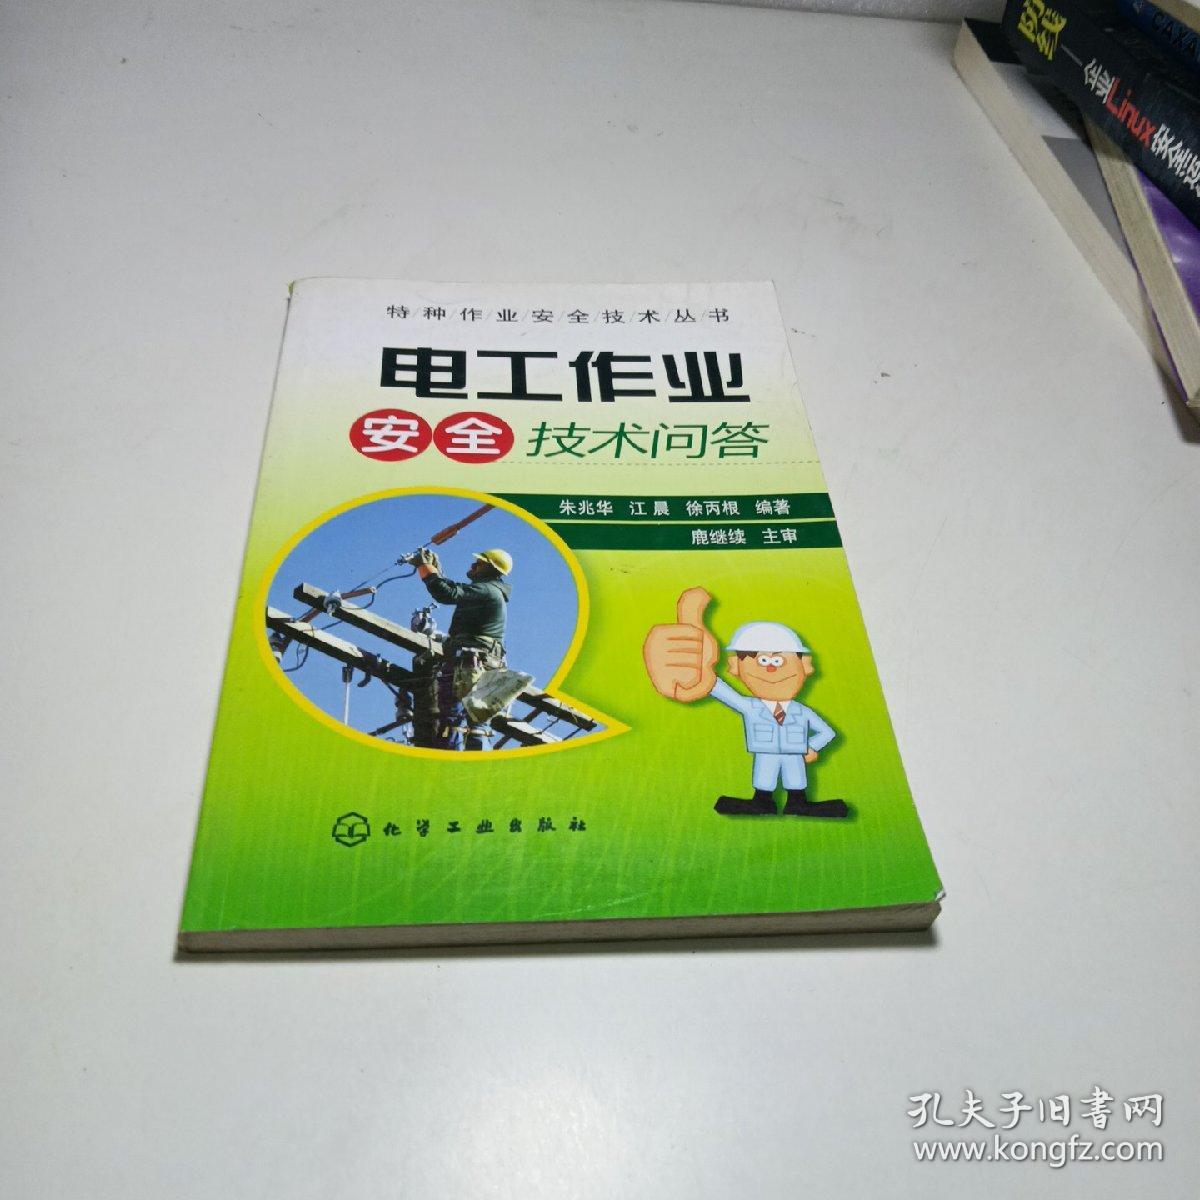 特种作业安全技术丛书--电工作业安全技术问答